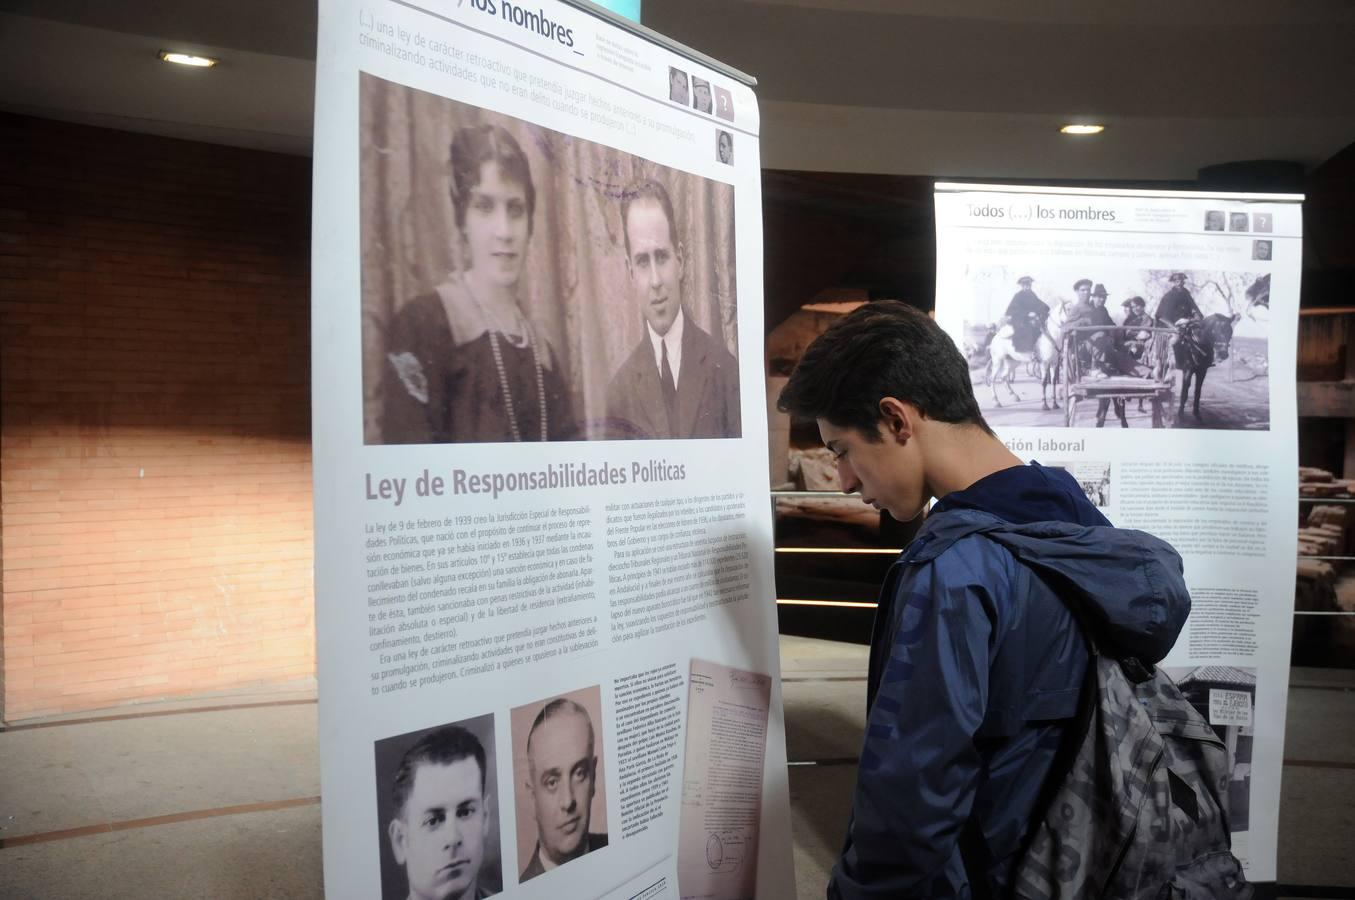 El objetivo de esta exposición es divulgar los contenidos de la Web www.todoslosnombres.org sobre las injusticias acaecidas durante el golpe de estado, la guerra civil y la posterior dictadura franquista.